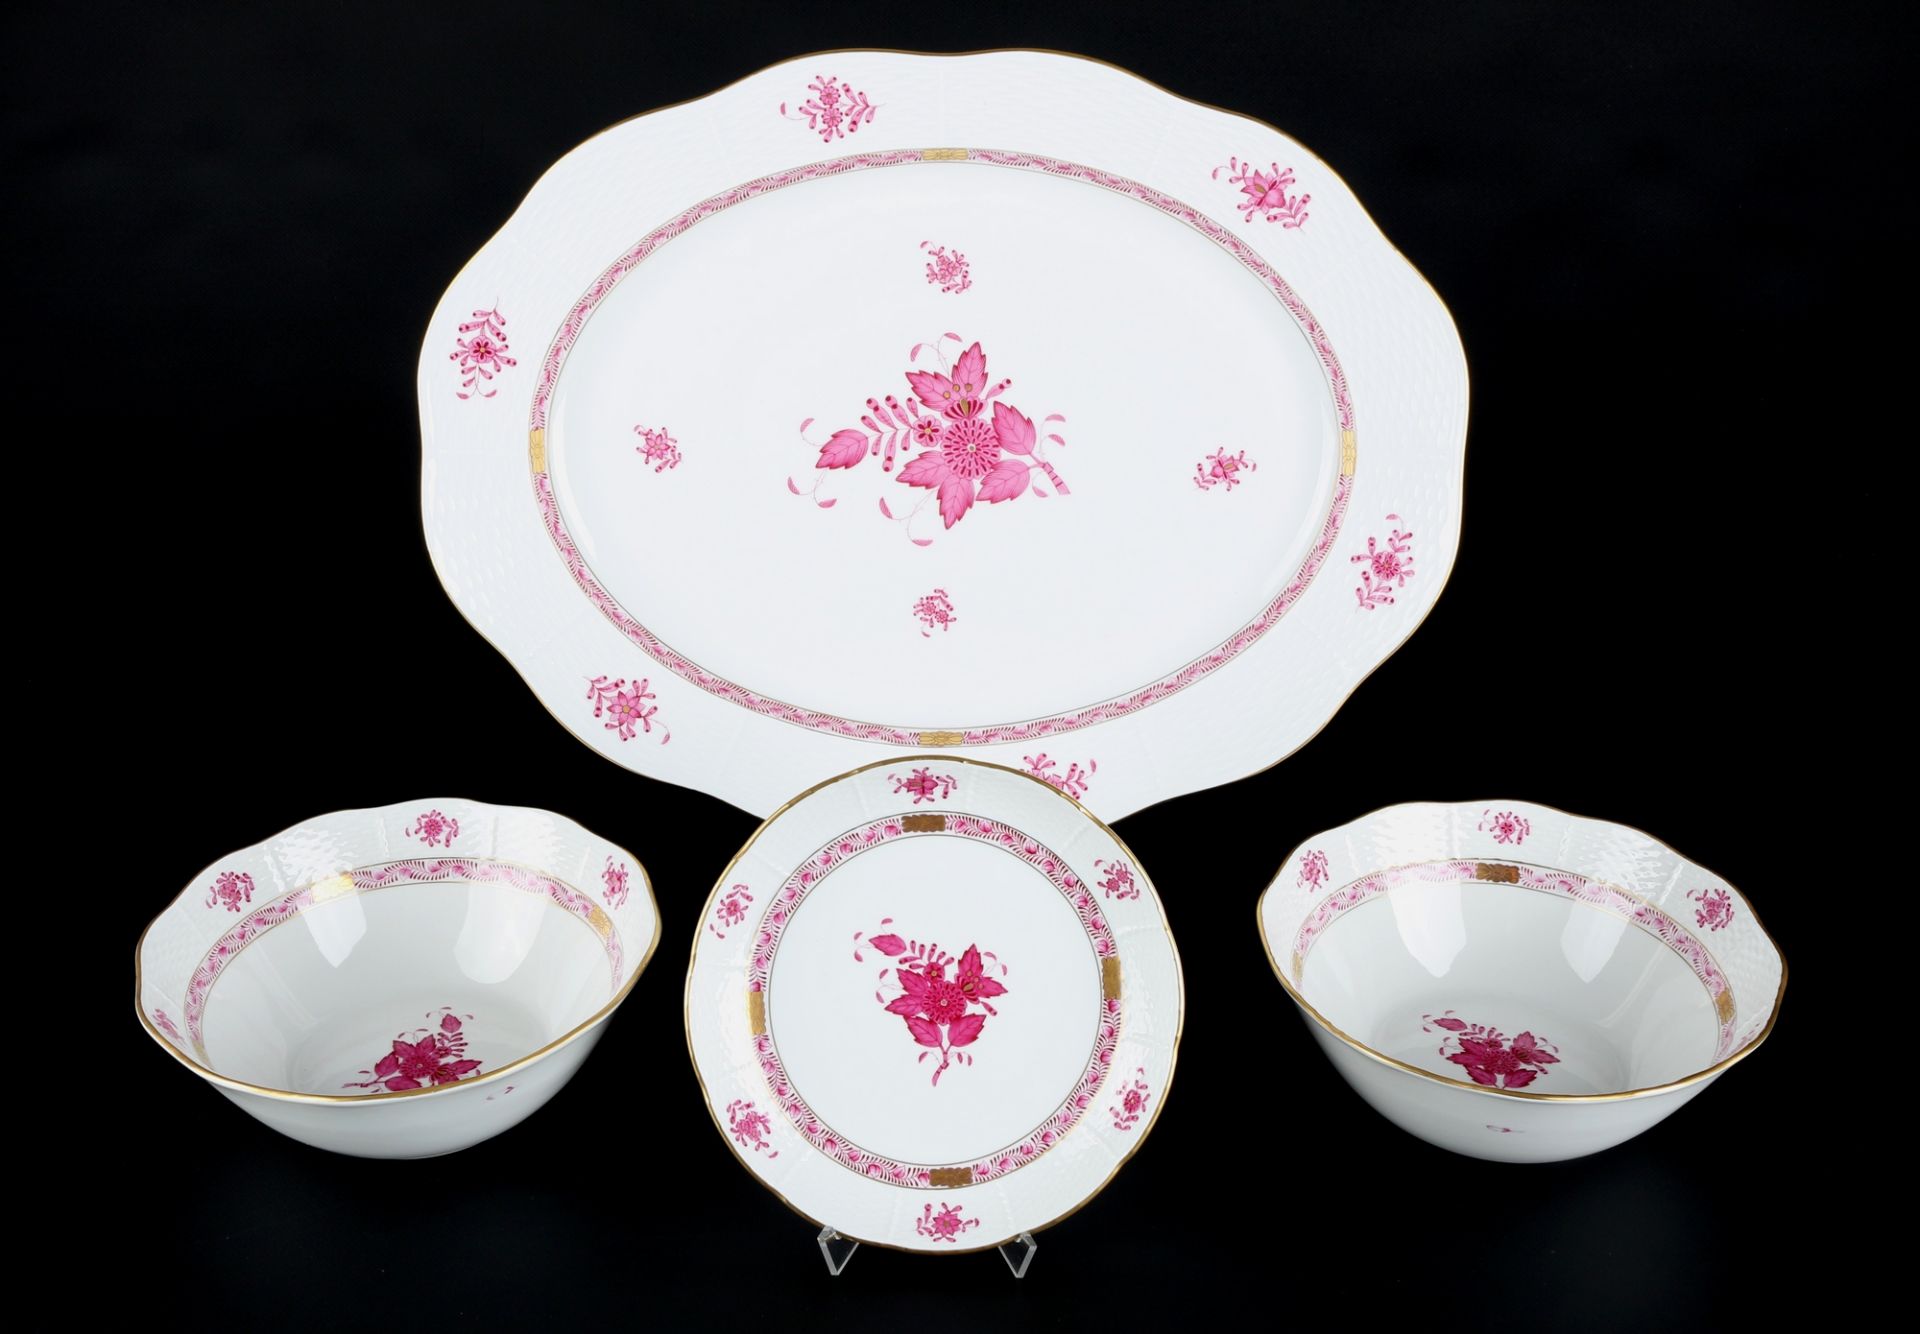 Herend Apponyi Purpur große Platte und 3 Schalen, porcelain dish and bowls,